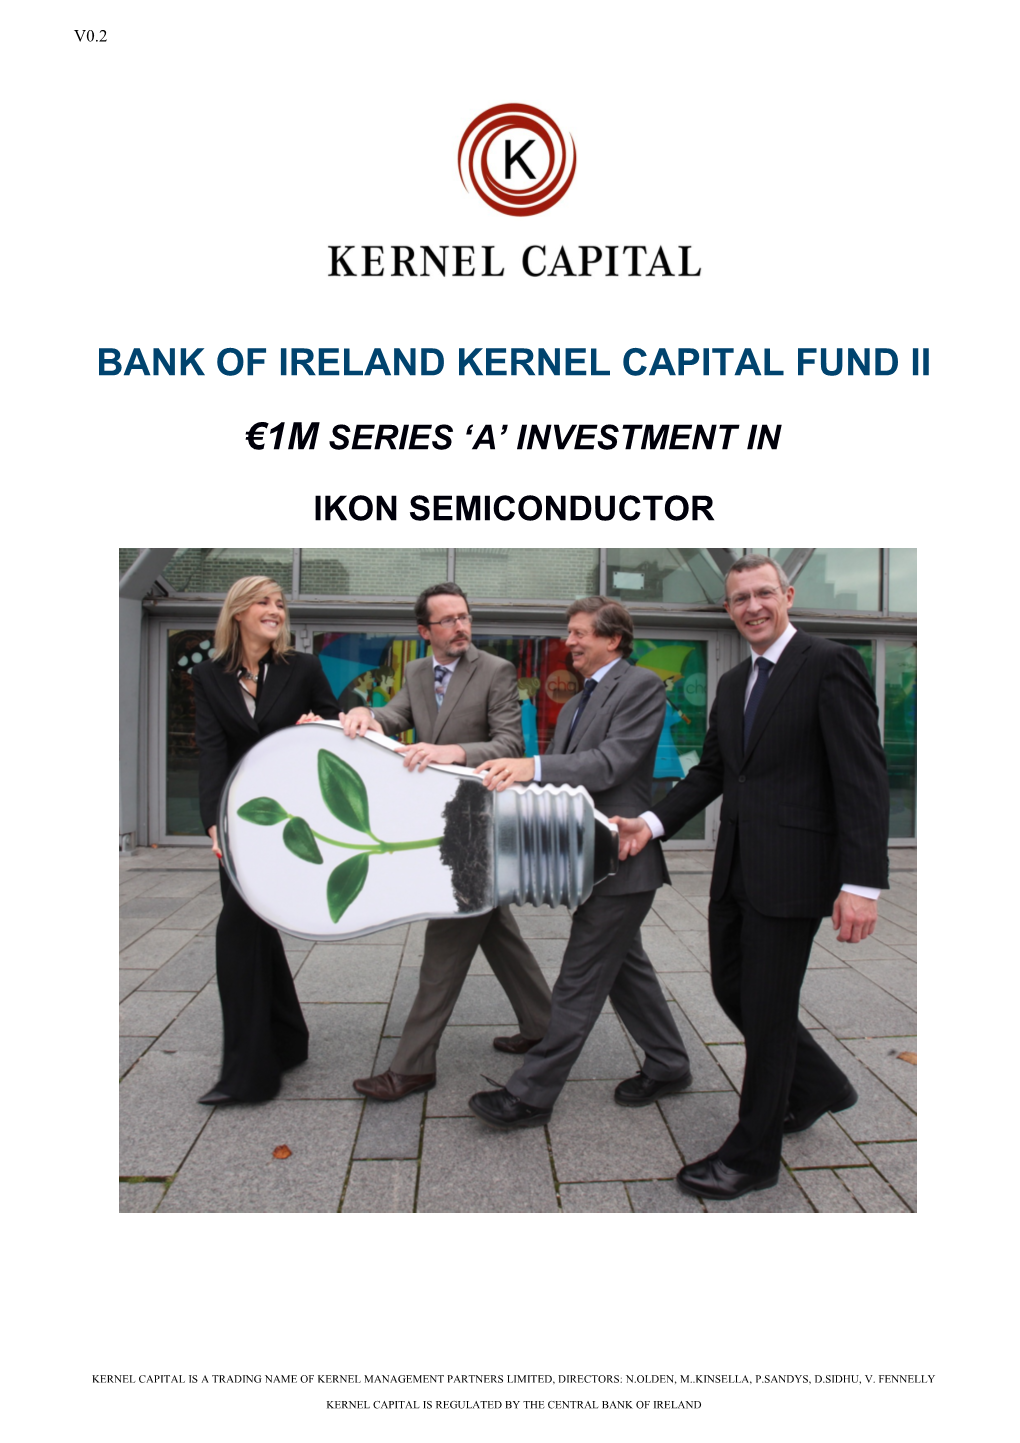 Bank of Ireland Kernel Capital Fund Ii